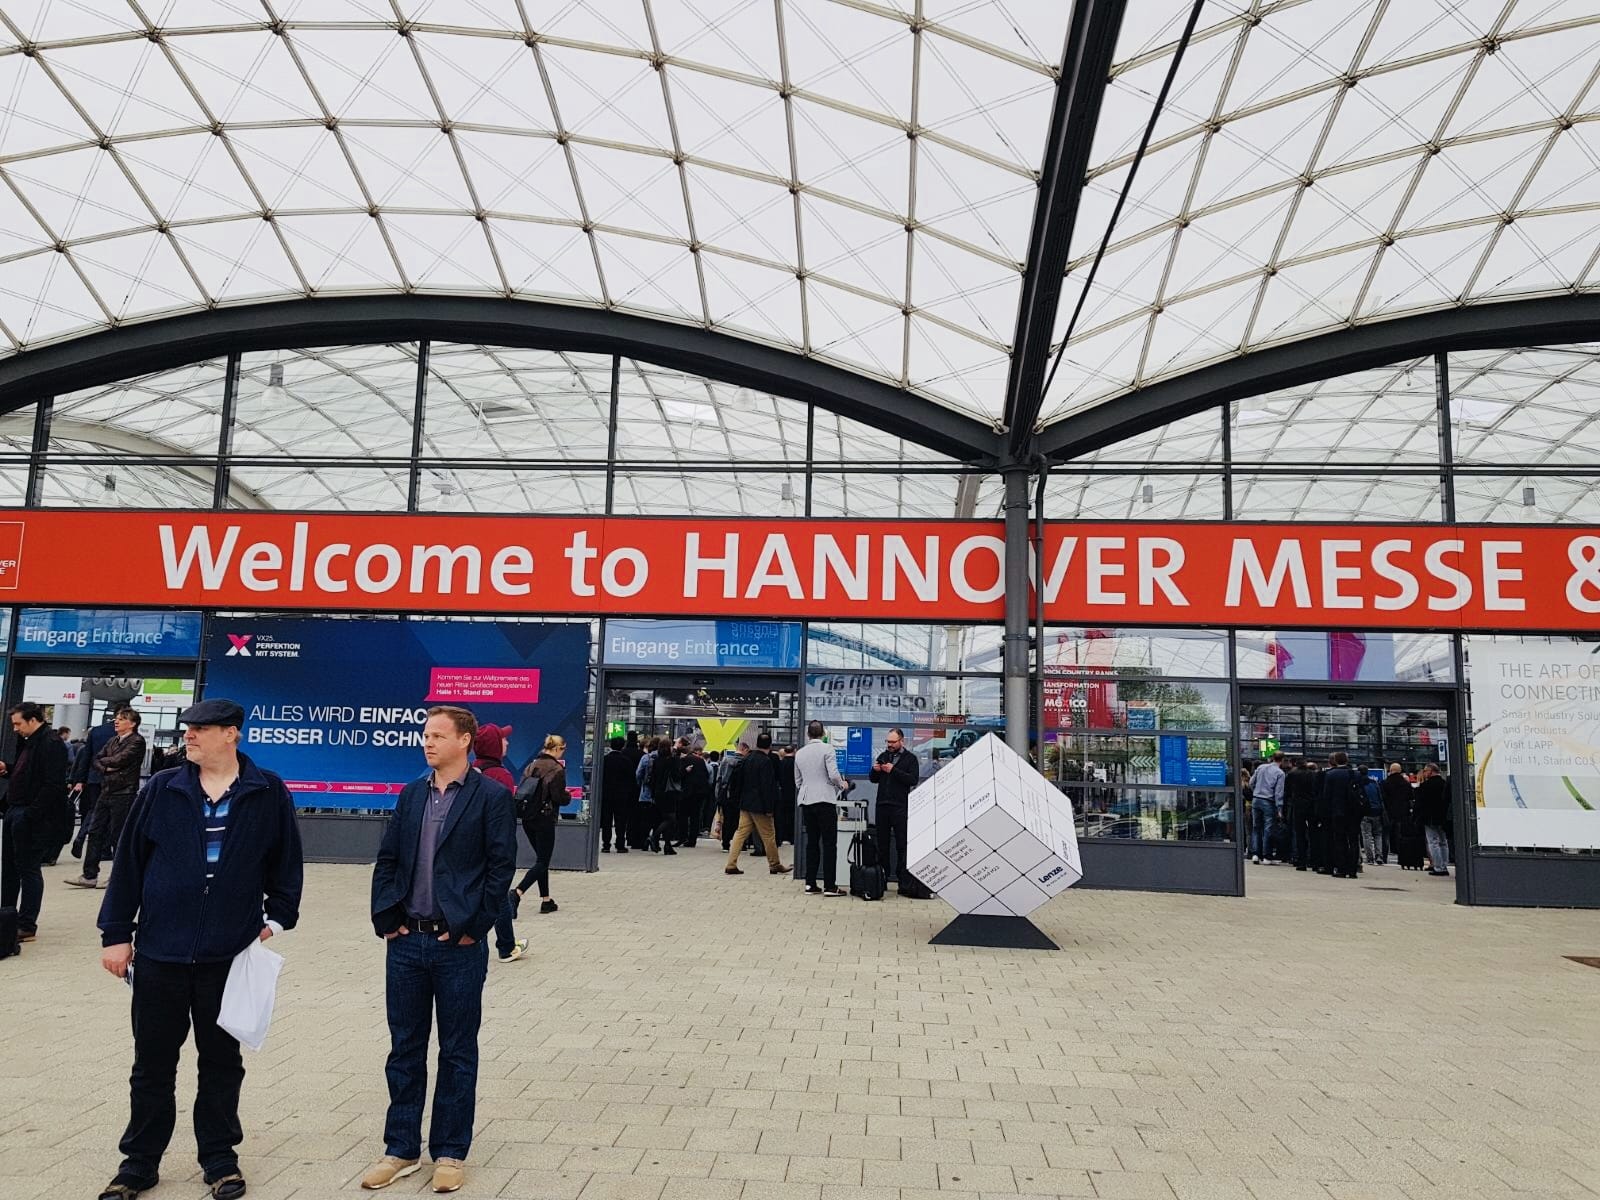 Hannover Messe 2018 Impression